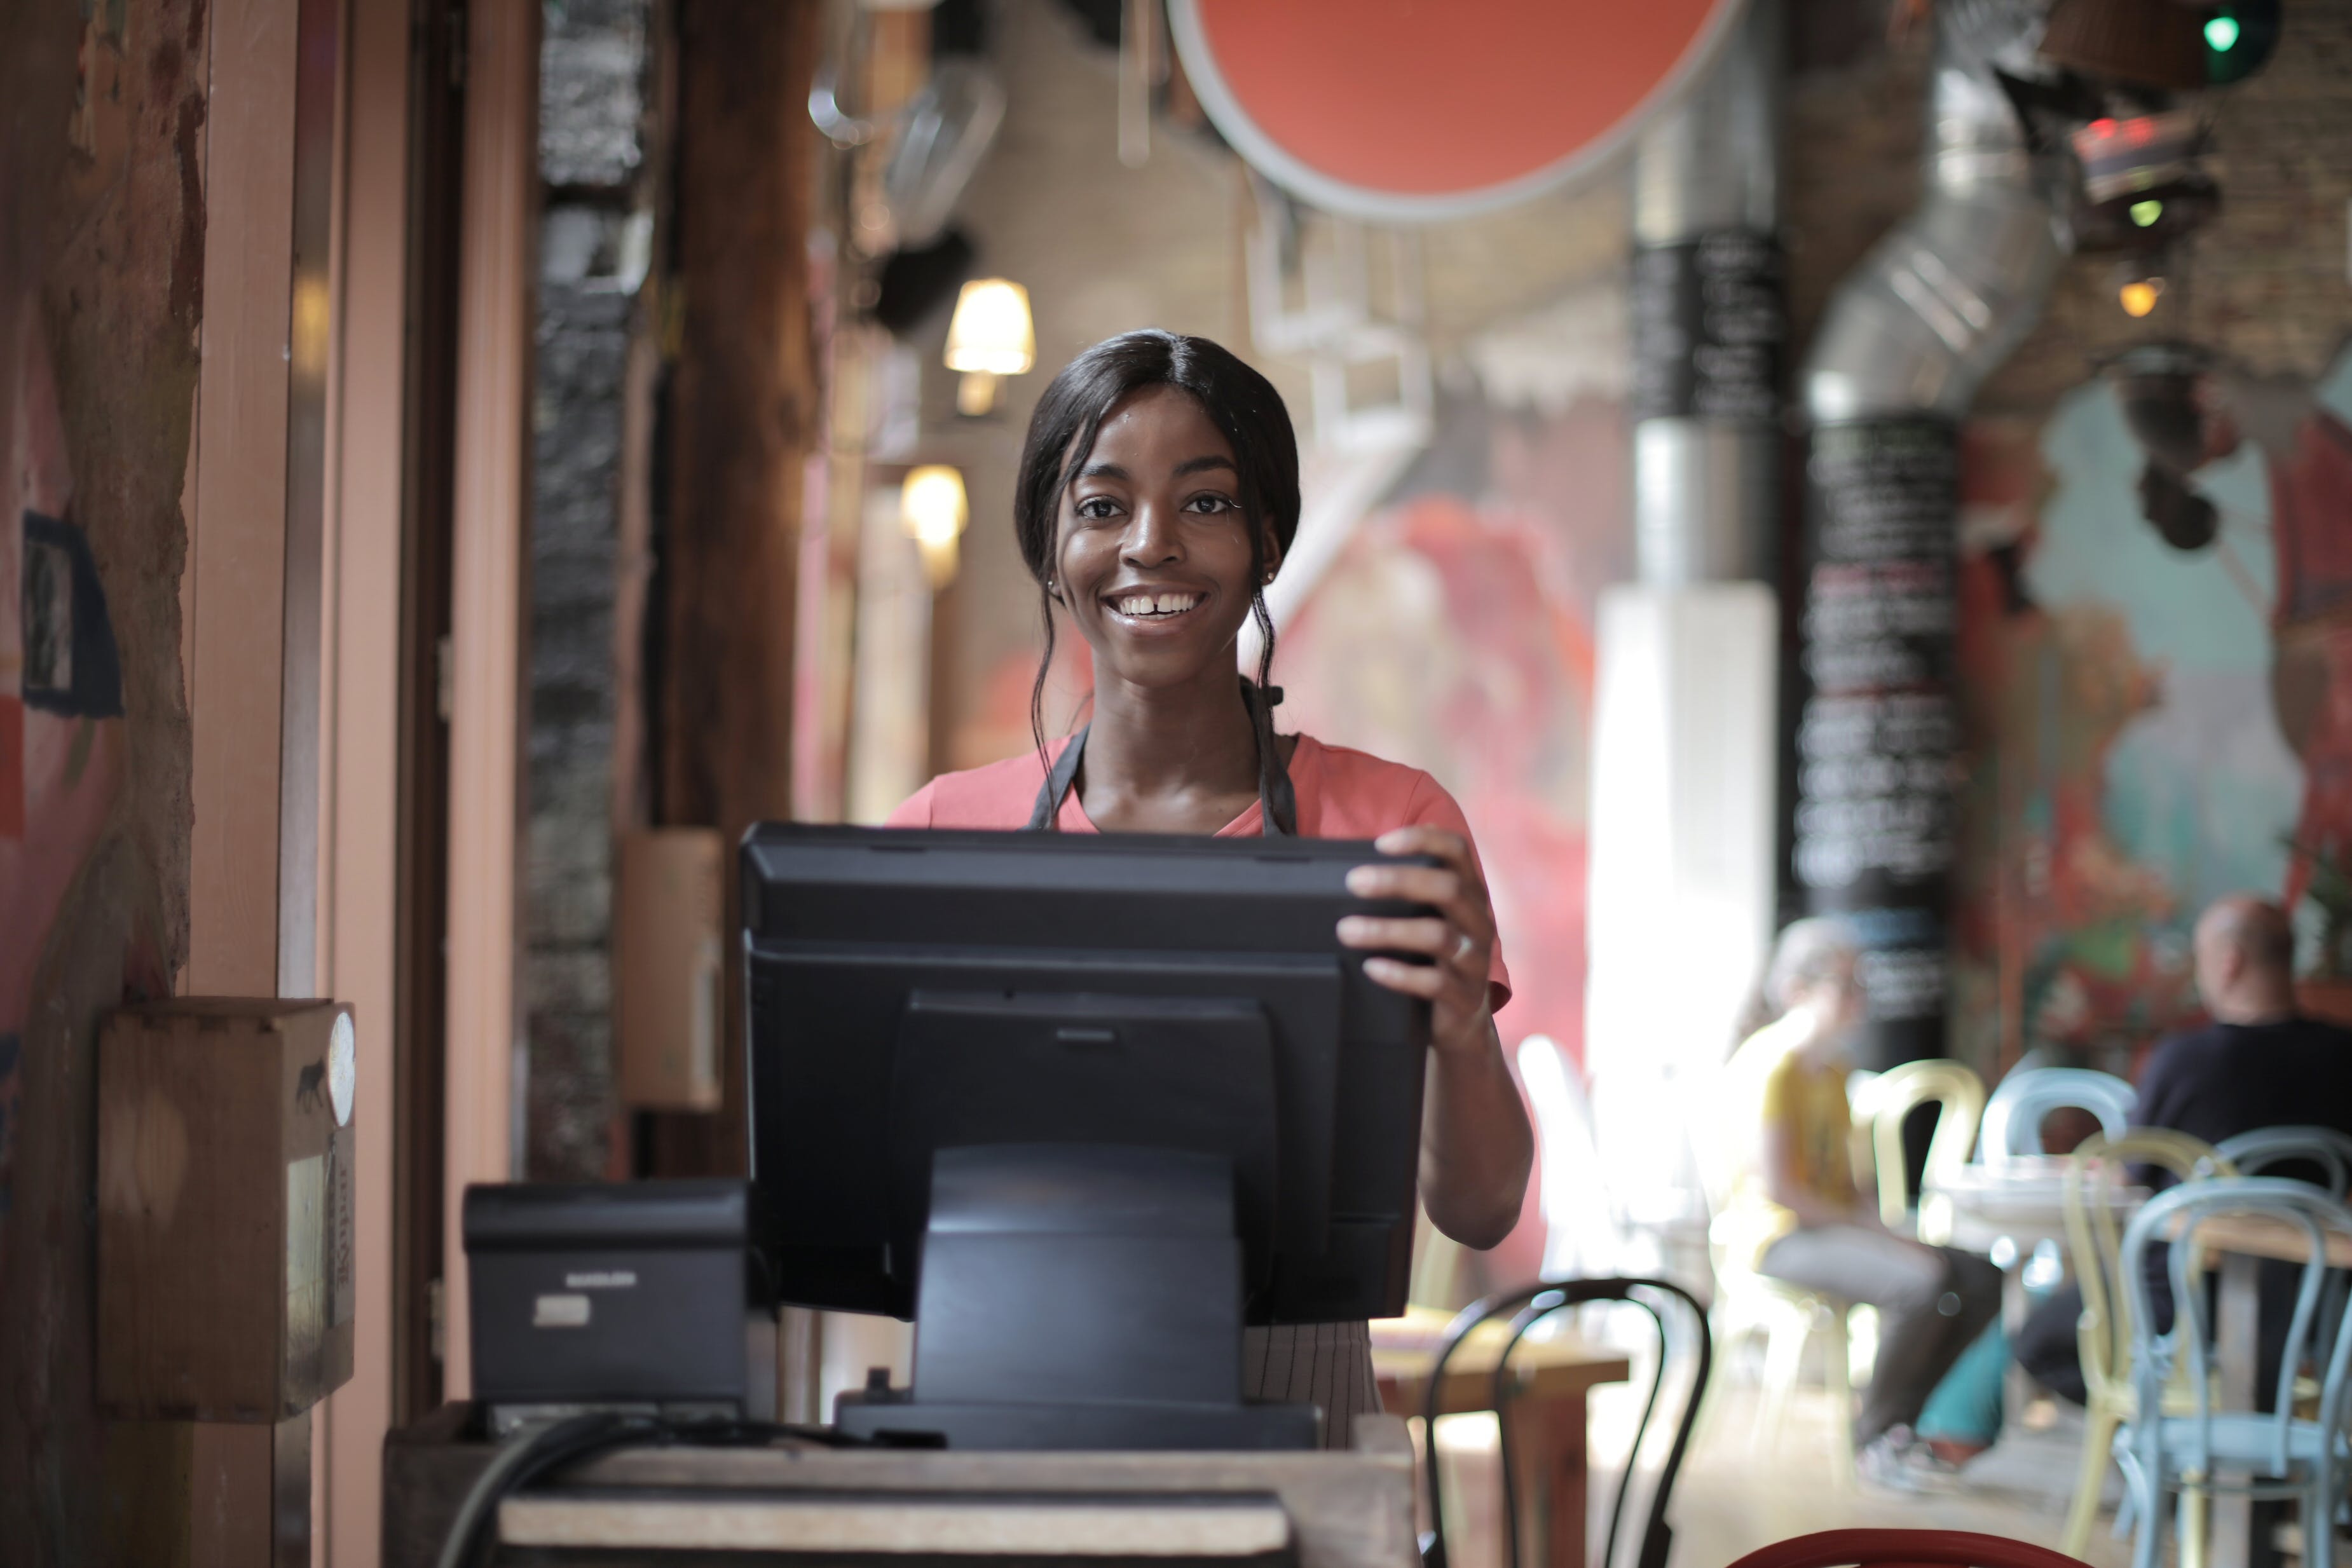 Une serveuse souriant alors qu'elle se tient derrière le comptoir | Source : Pexels